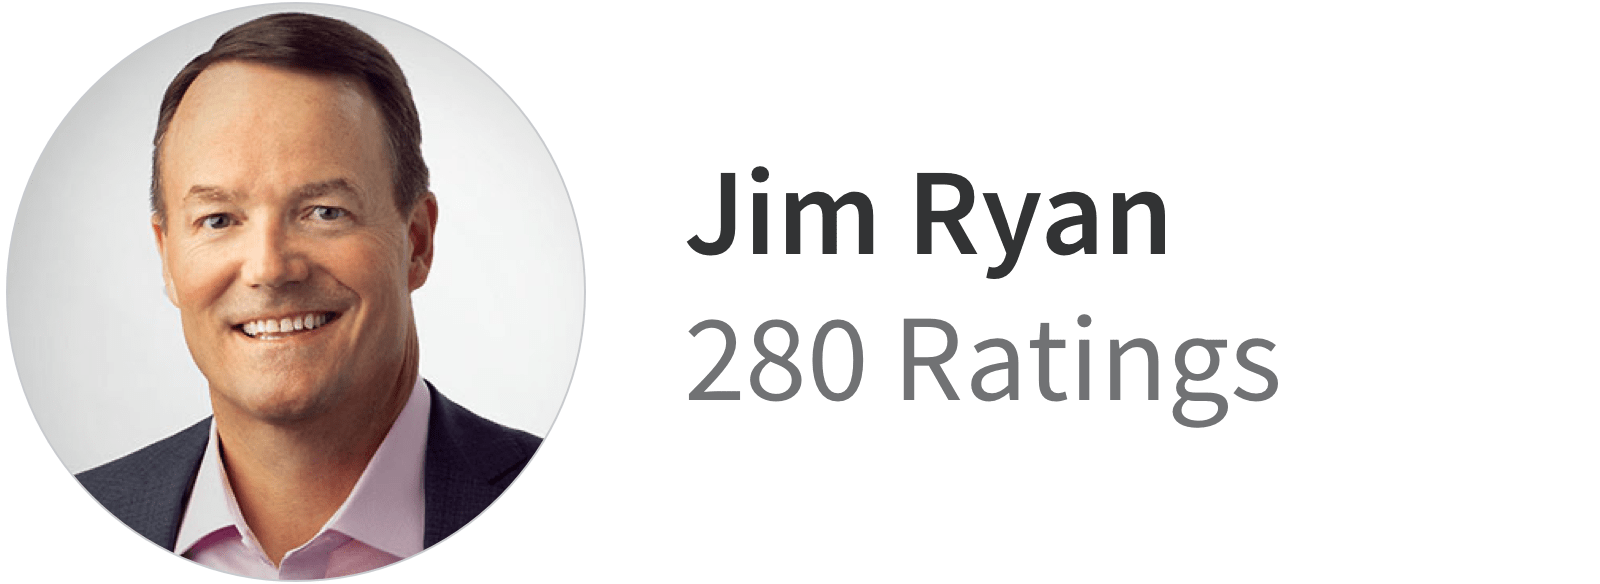 280 ratings for Jim Ryan on Glassdoor